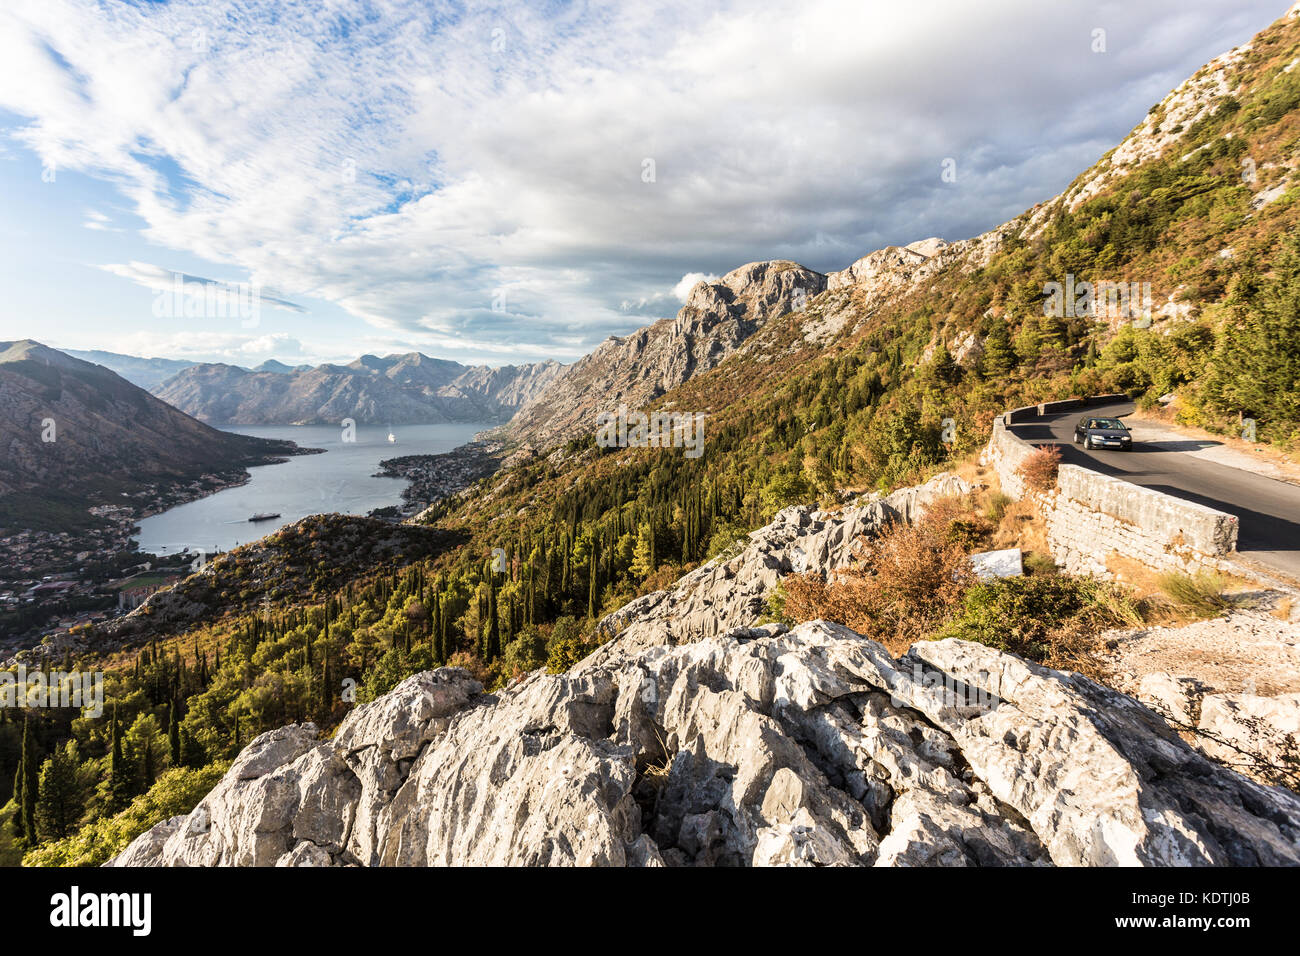 Strada di montagna al di sopra della Baia di Kotor e la città vecchia in Montenegro nei Balcani, Europa sud-orientale Foto Stock